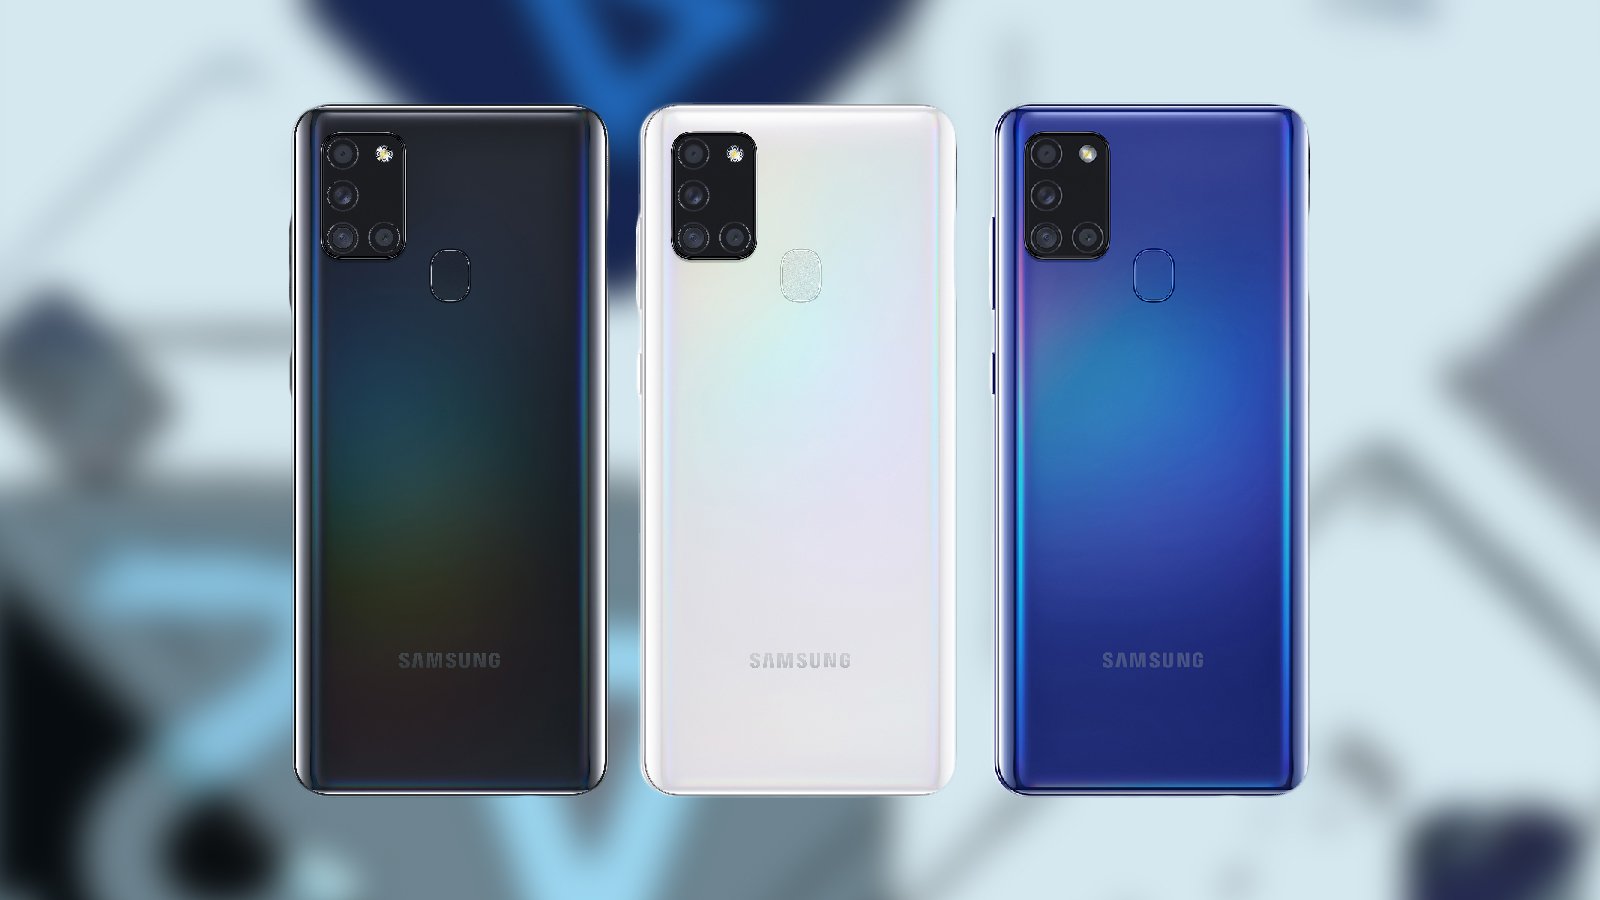 Chiếc điện thoại Samsung Galaxy A21s là một sản phẩm đầy đủ tính năng với đầy đủ những trang bị tiên tiến nhất. Giá cả hợp lý của Galaxy A21s chắc chắn sẽ làm bạn hài lòng và giúp bạn tận hưởng những trải nghiệm hoàn toàn mới về công nghệ di động.